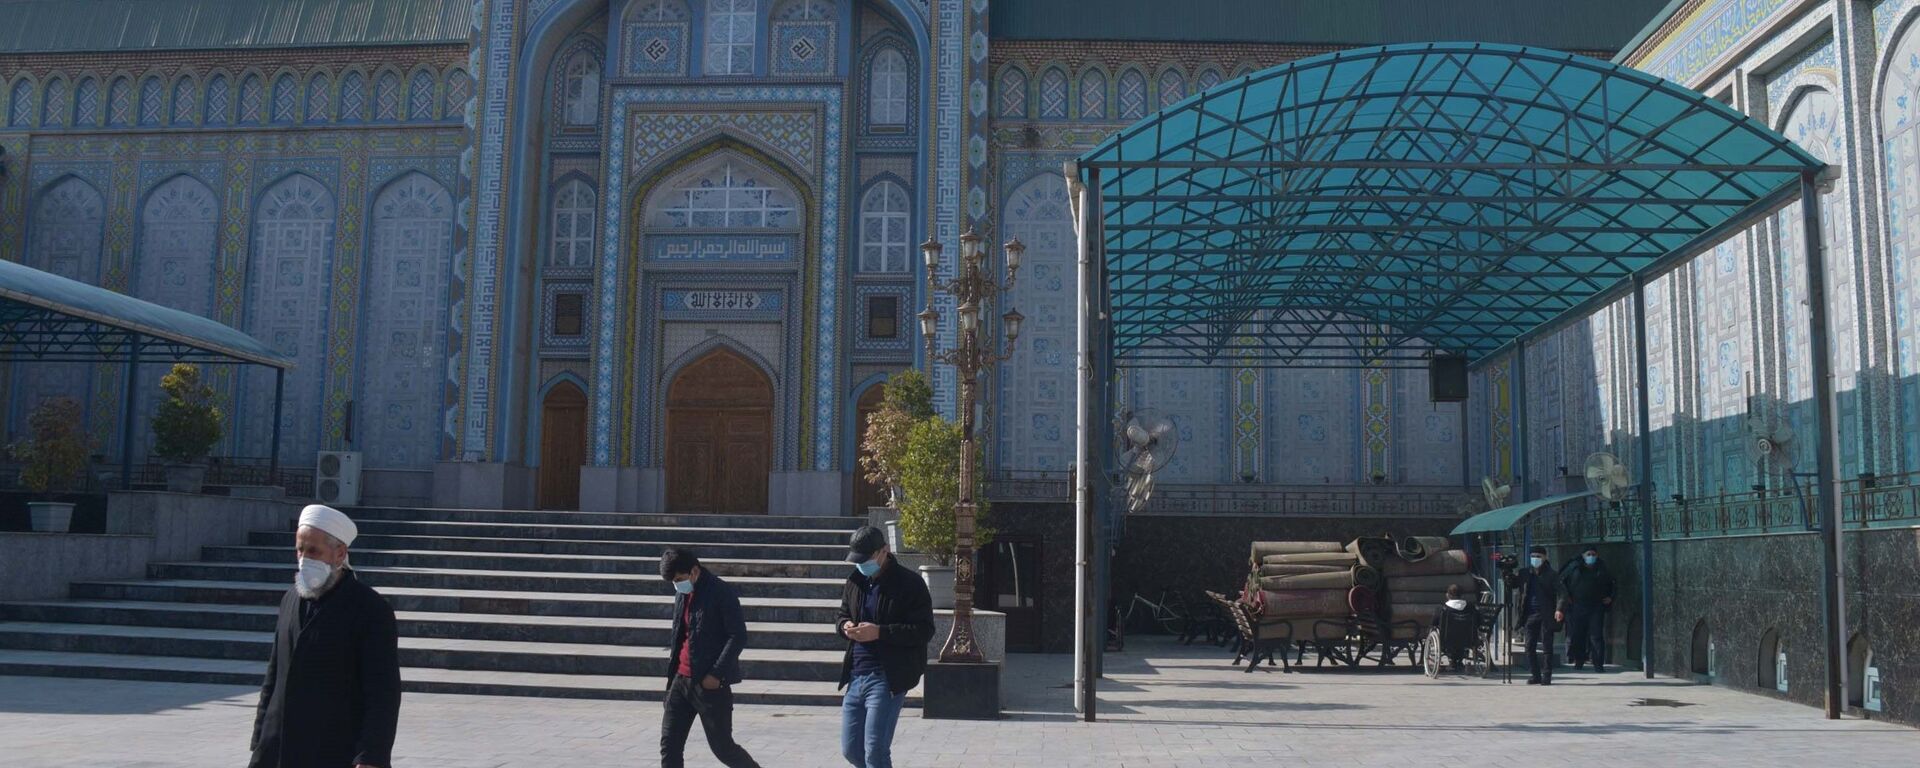 Открытие мечетей в Таджикистане - Sputnik Тоҷикистон, 1920, 22.06.2021